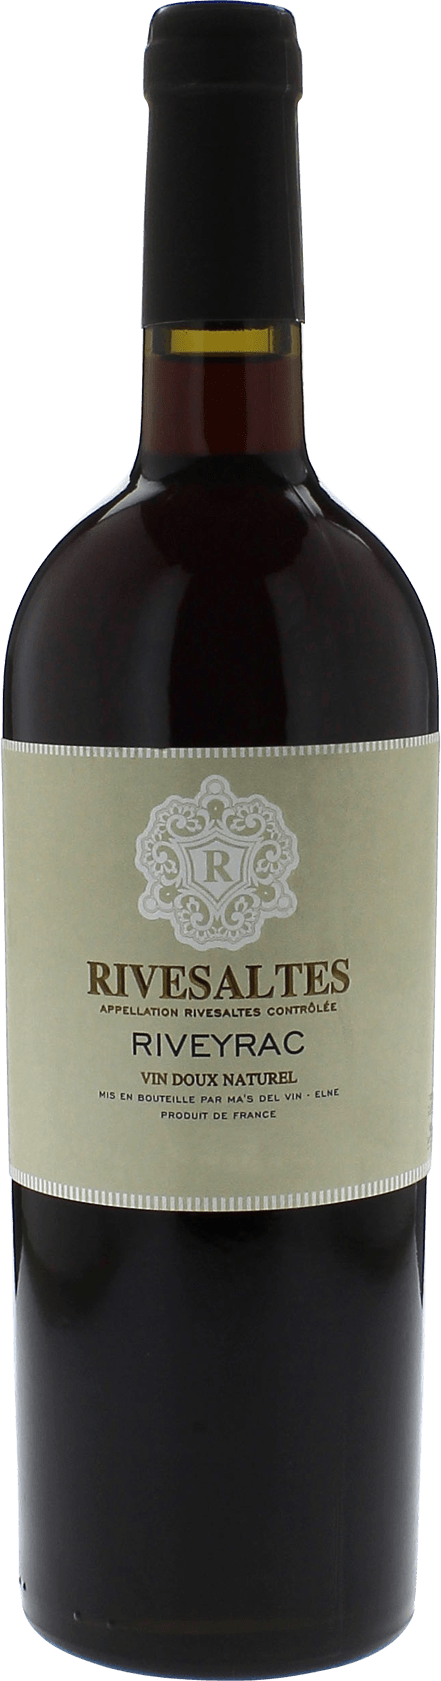 Riveyrac 1984 Vin doux naturel Rivesaltes, Vin doux naturel